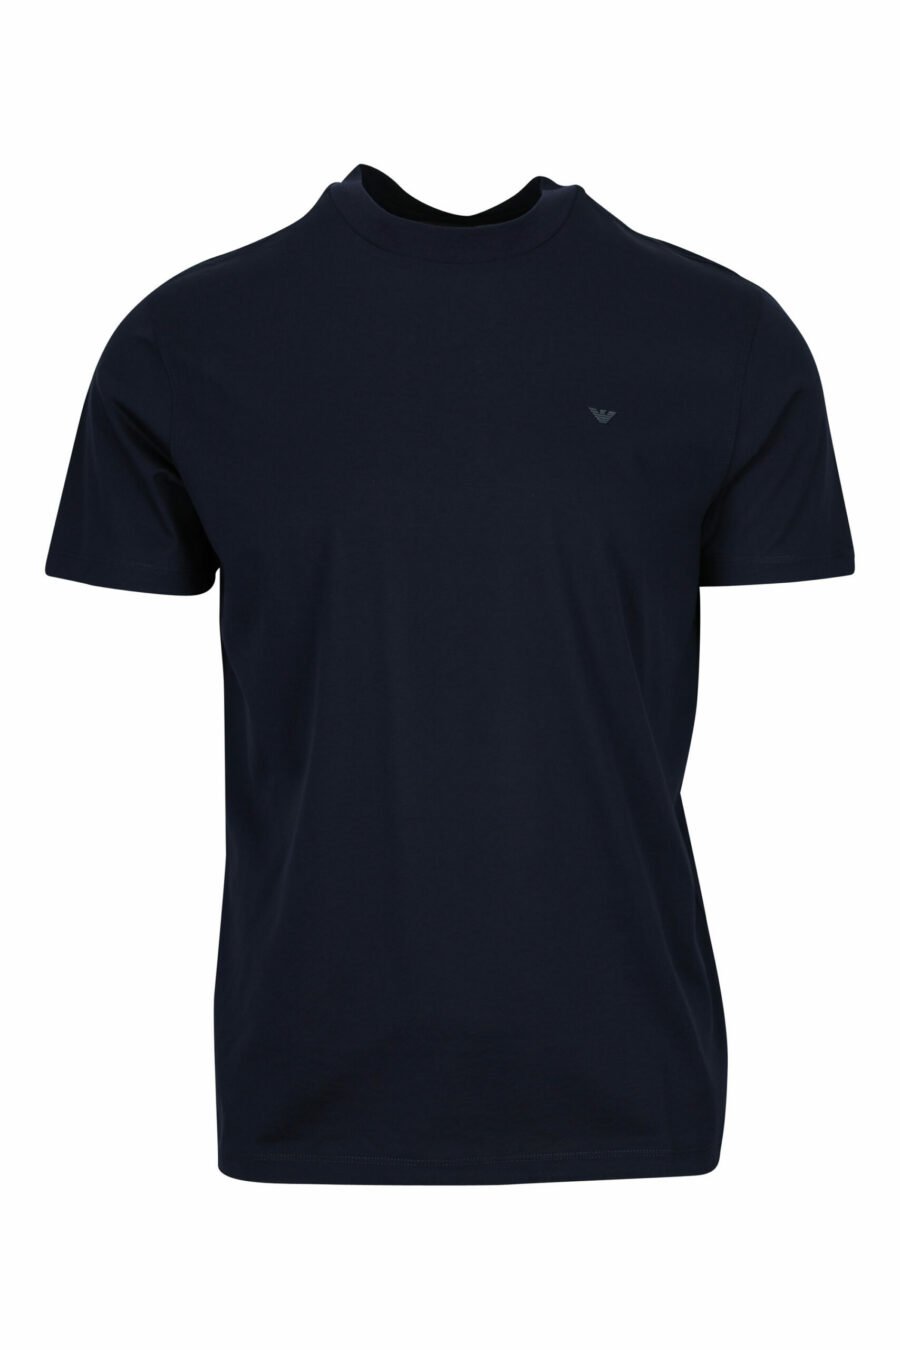 T-shirt azul escura com mini logótipo da águia - 8058997155687